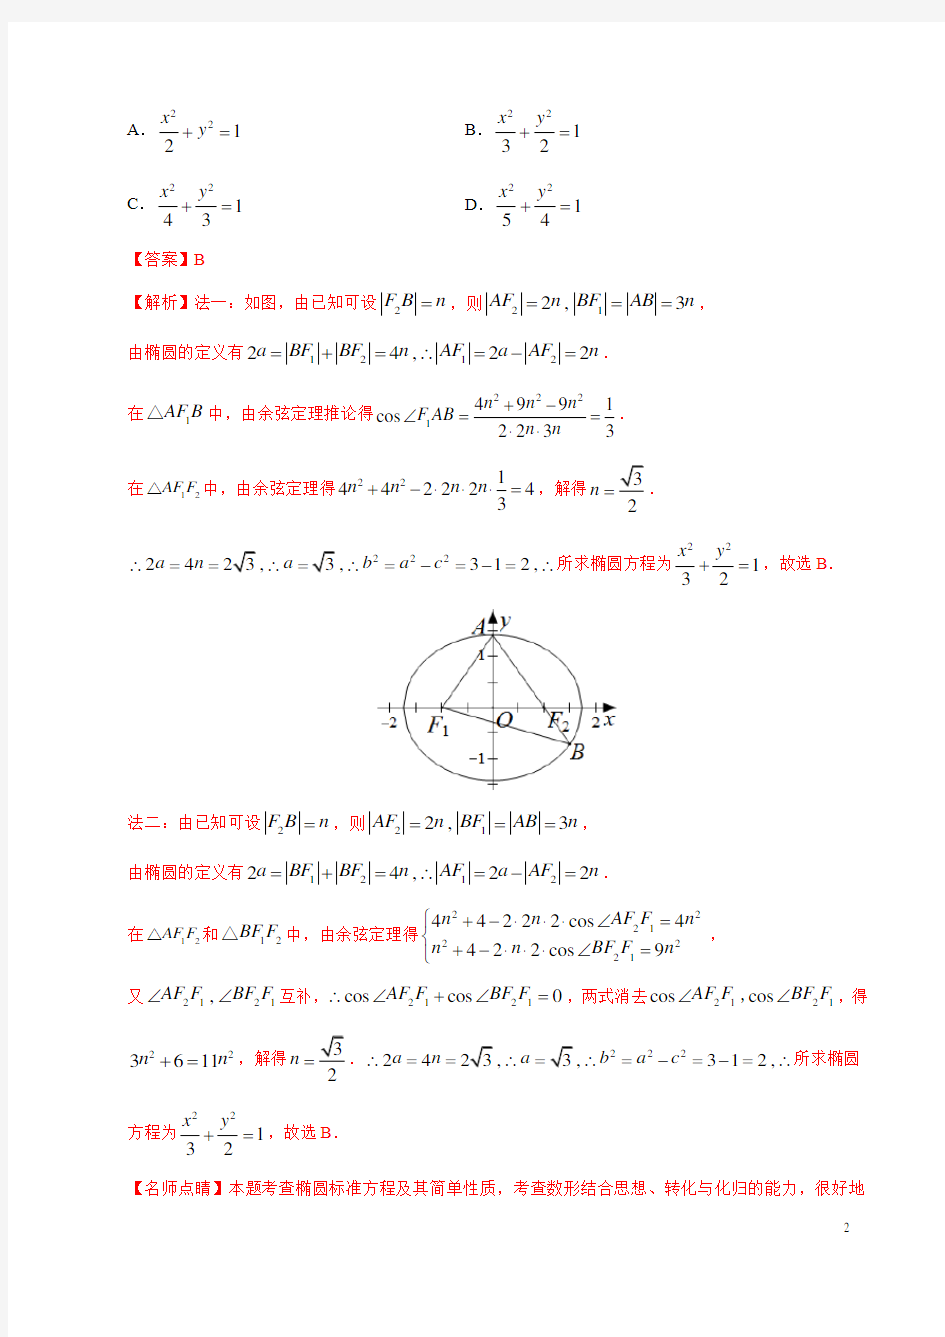 平面解析几何高考题(解析版)